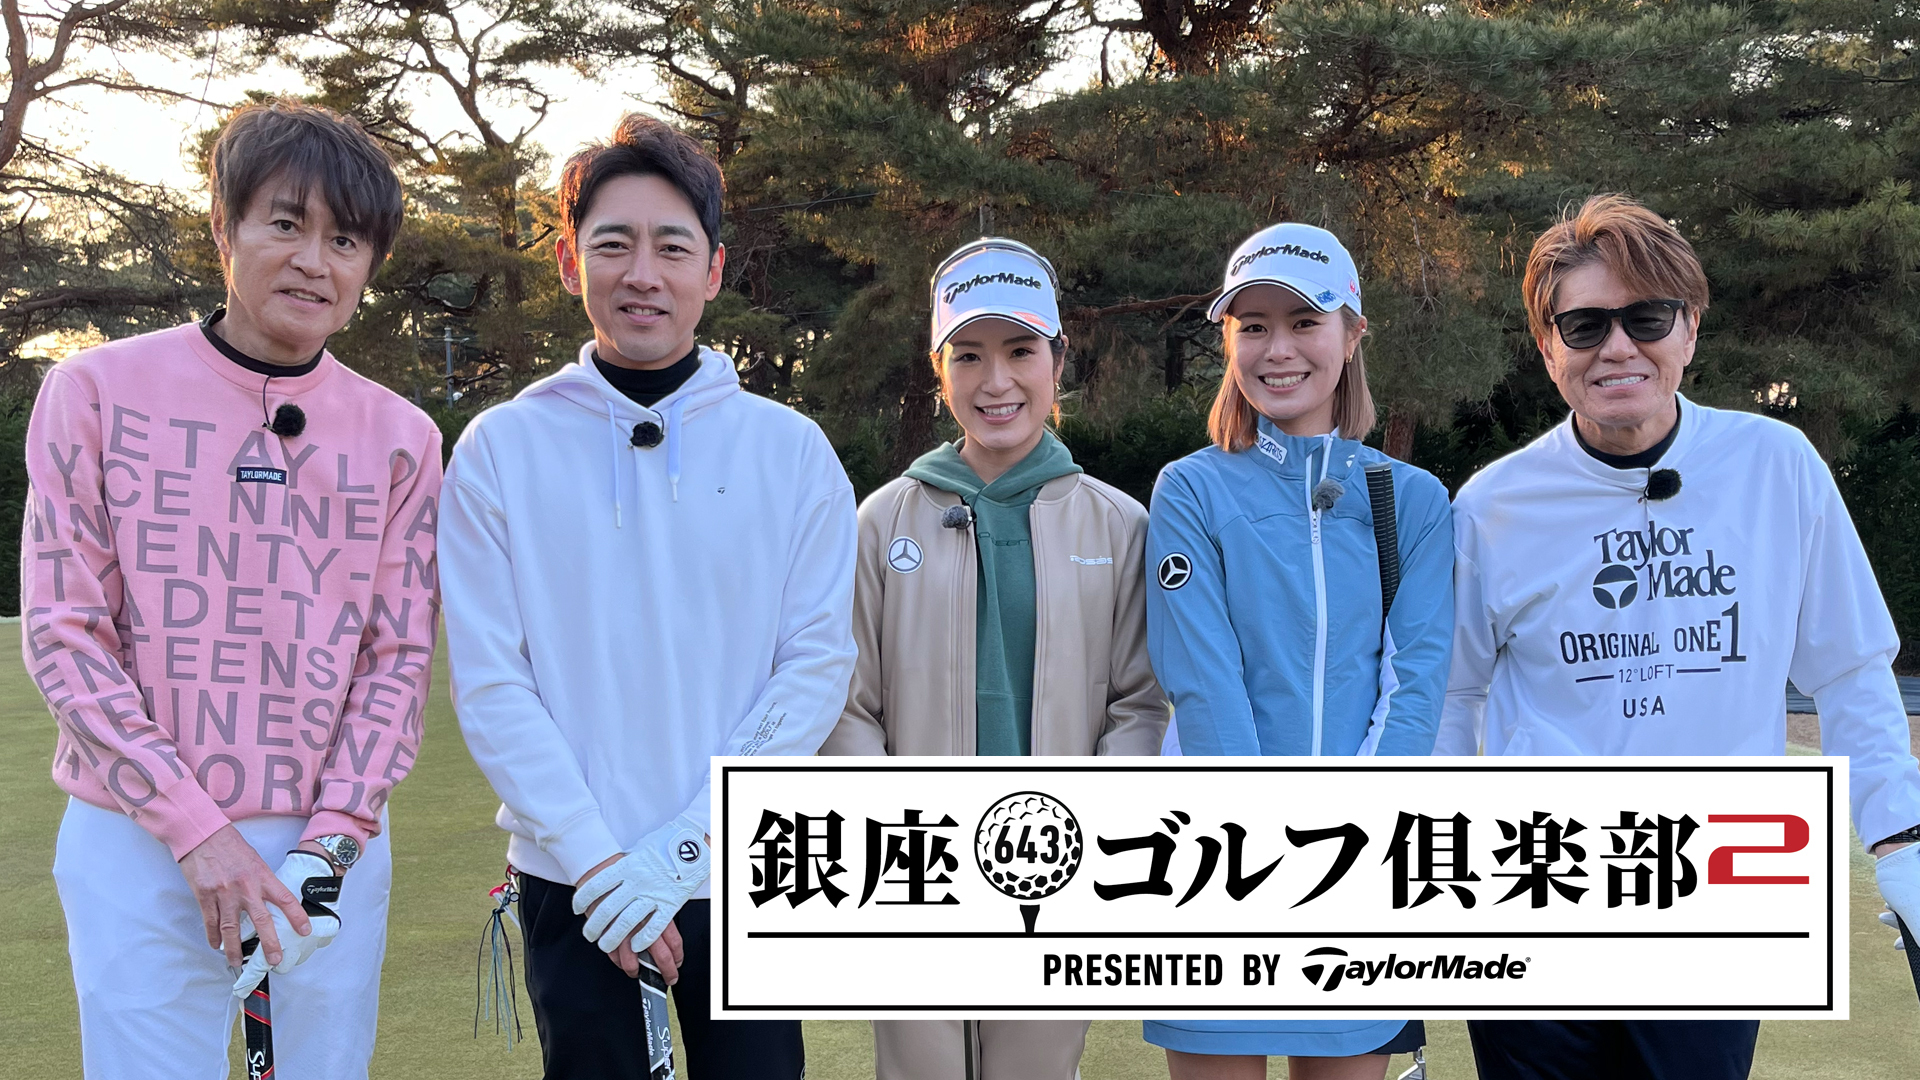 銀座ゴルフ倶楽部2 presented by テーラーメイド